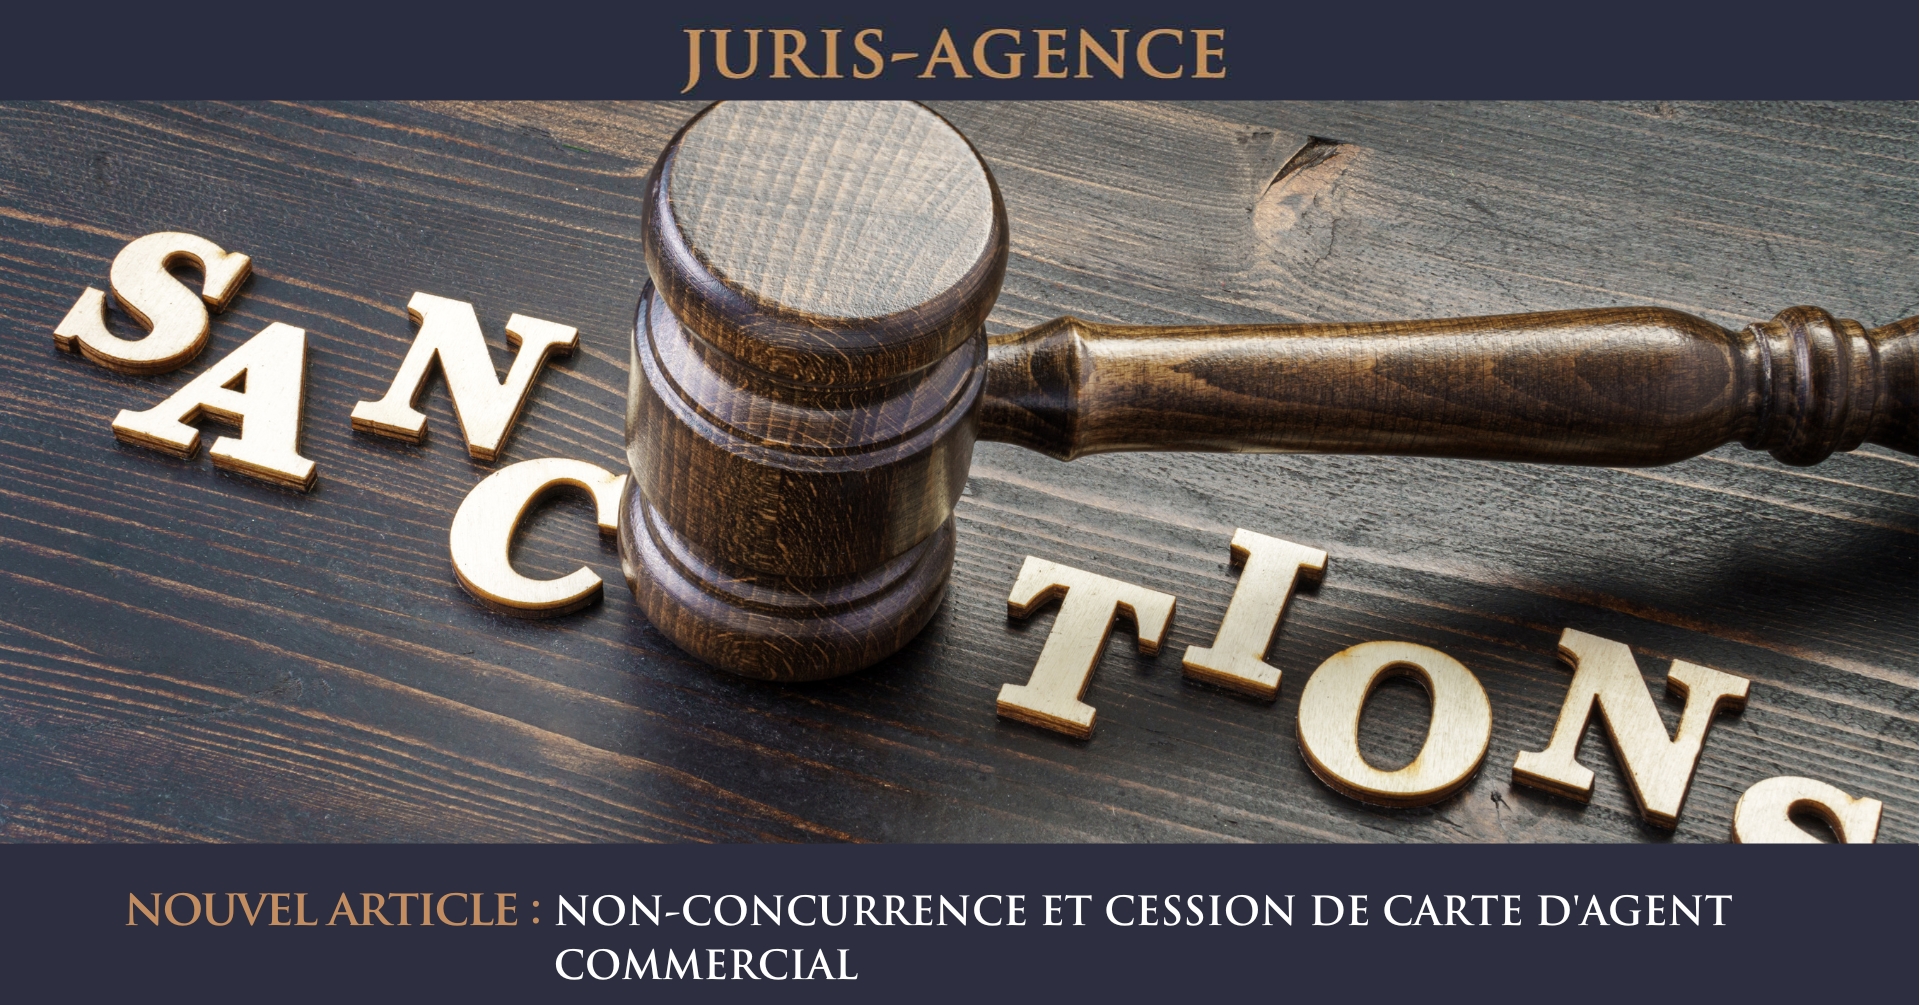 NON-CONCURRENCE ET CESSION DE CARTE D'AGENT COMMERCIAL